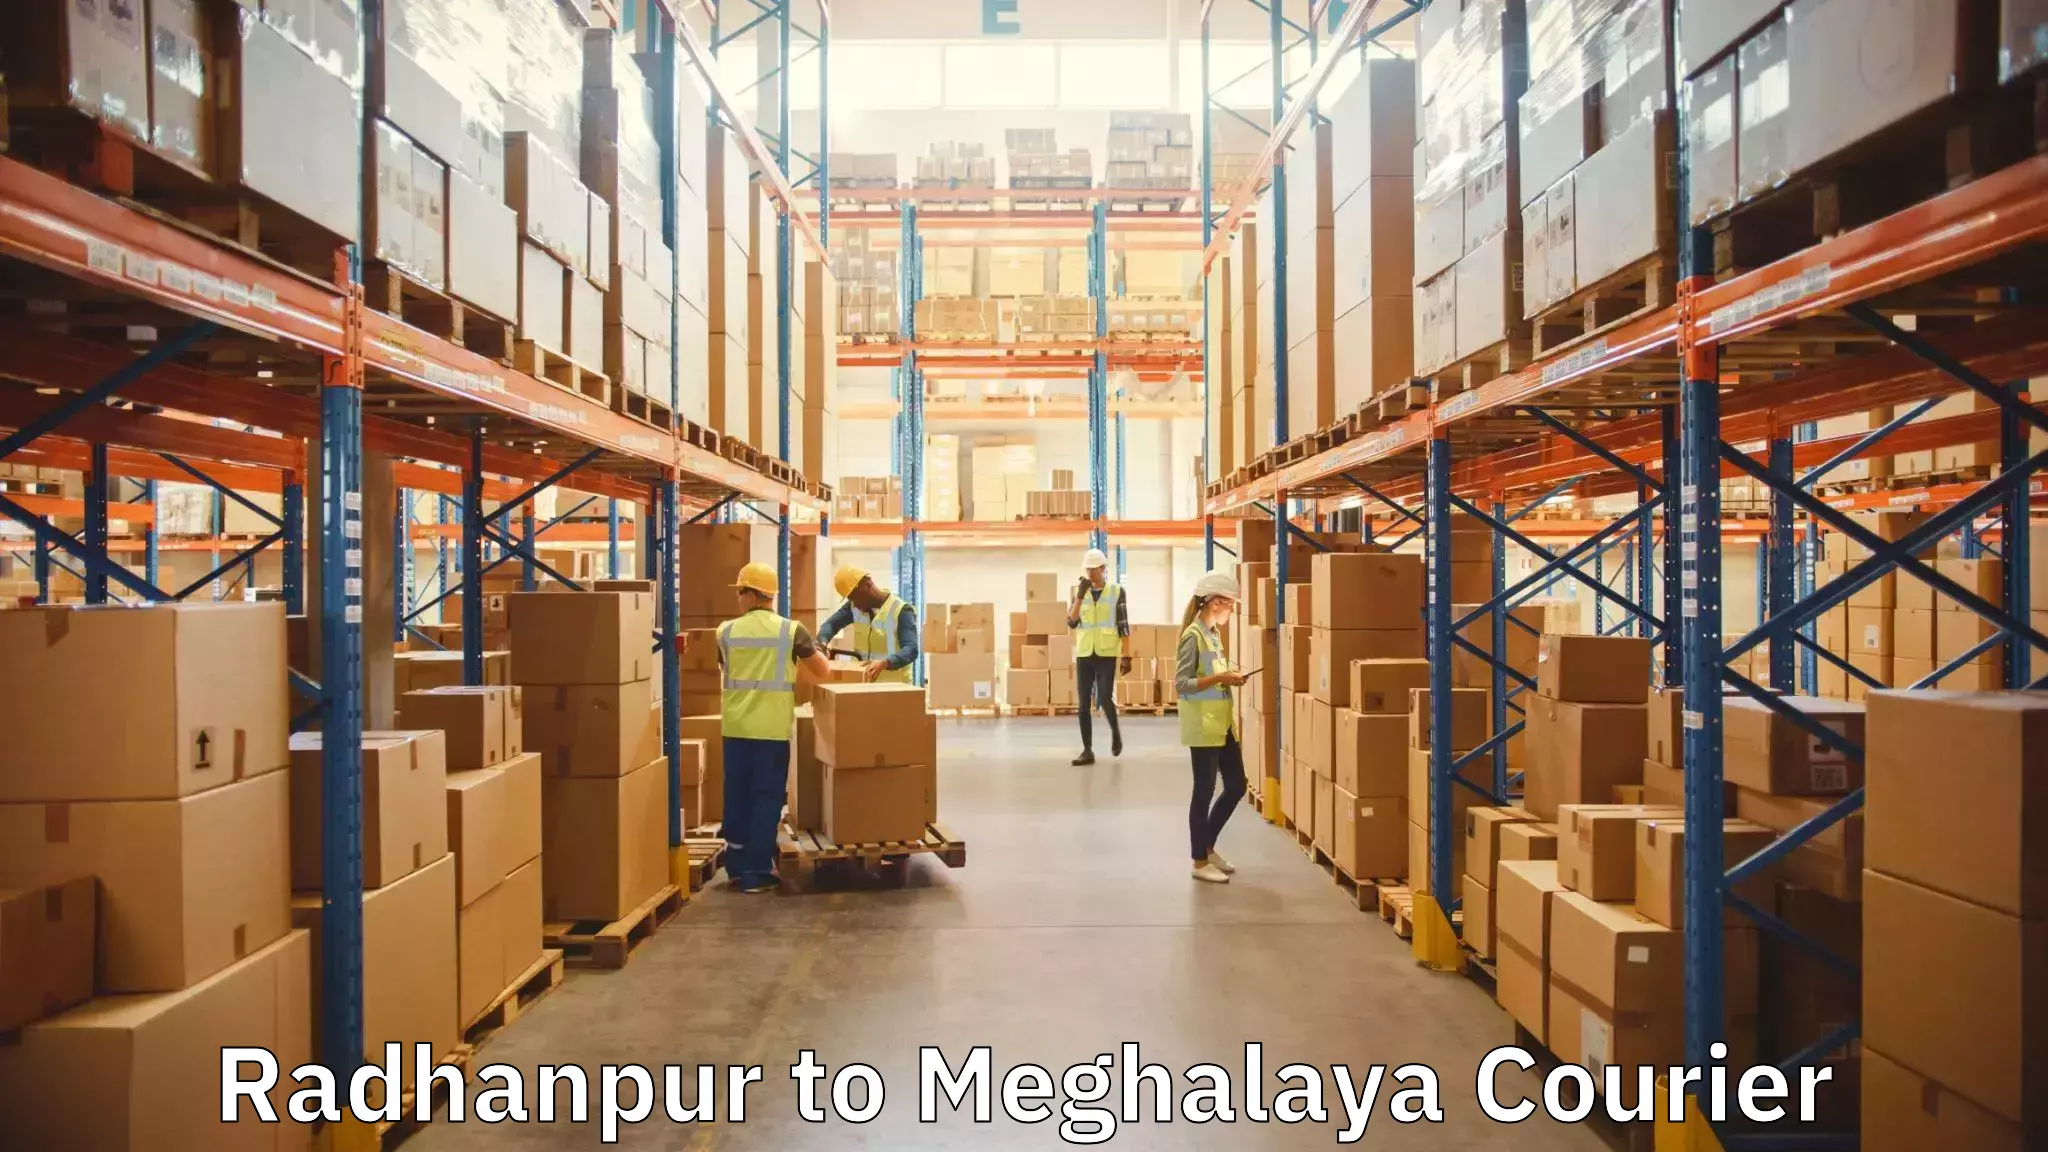 Furniture moving experts Radhanpur to Meghalaya